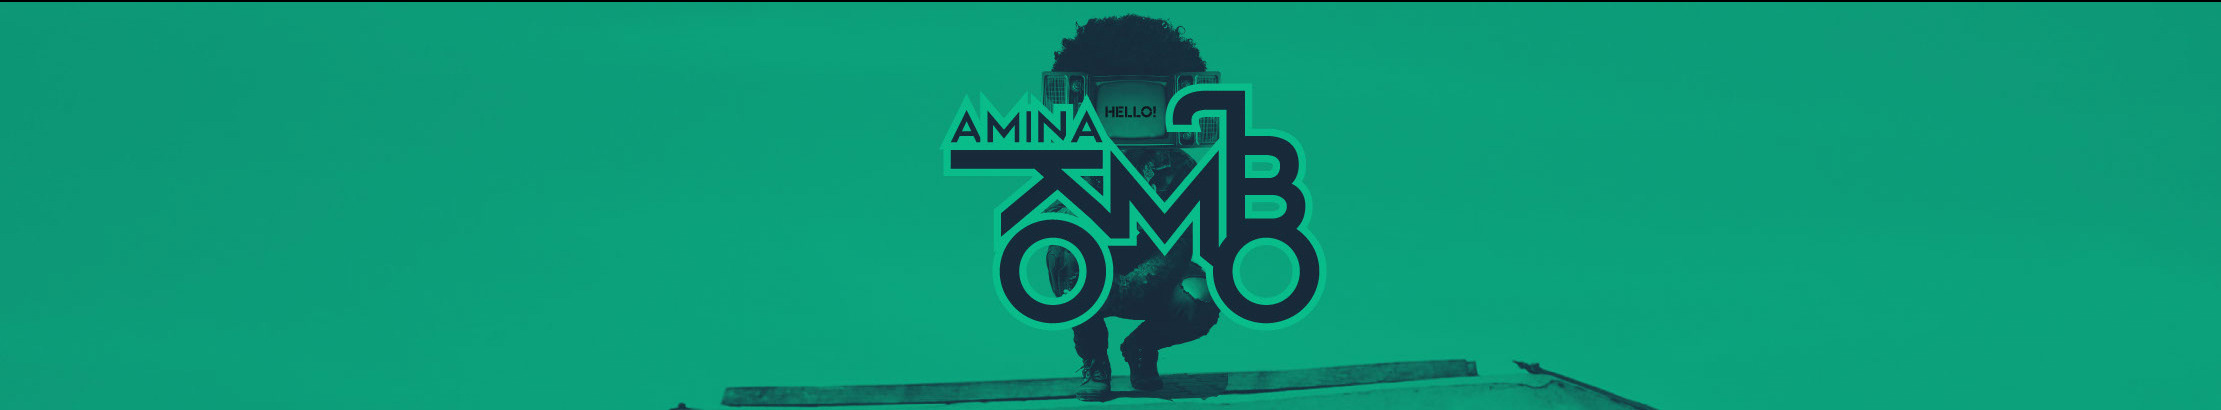 Amina Kombo profil başlığı